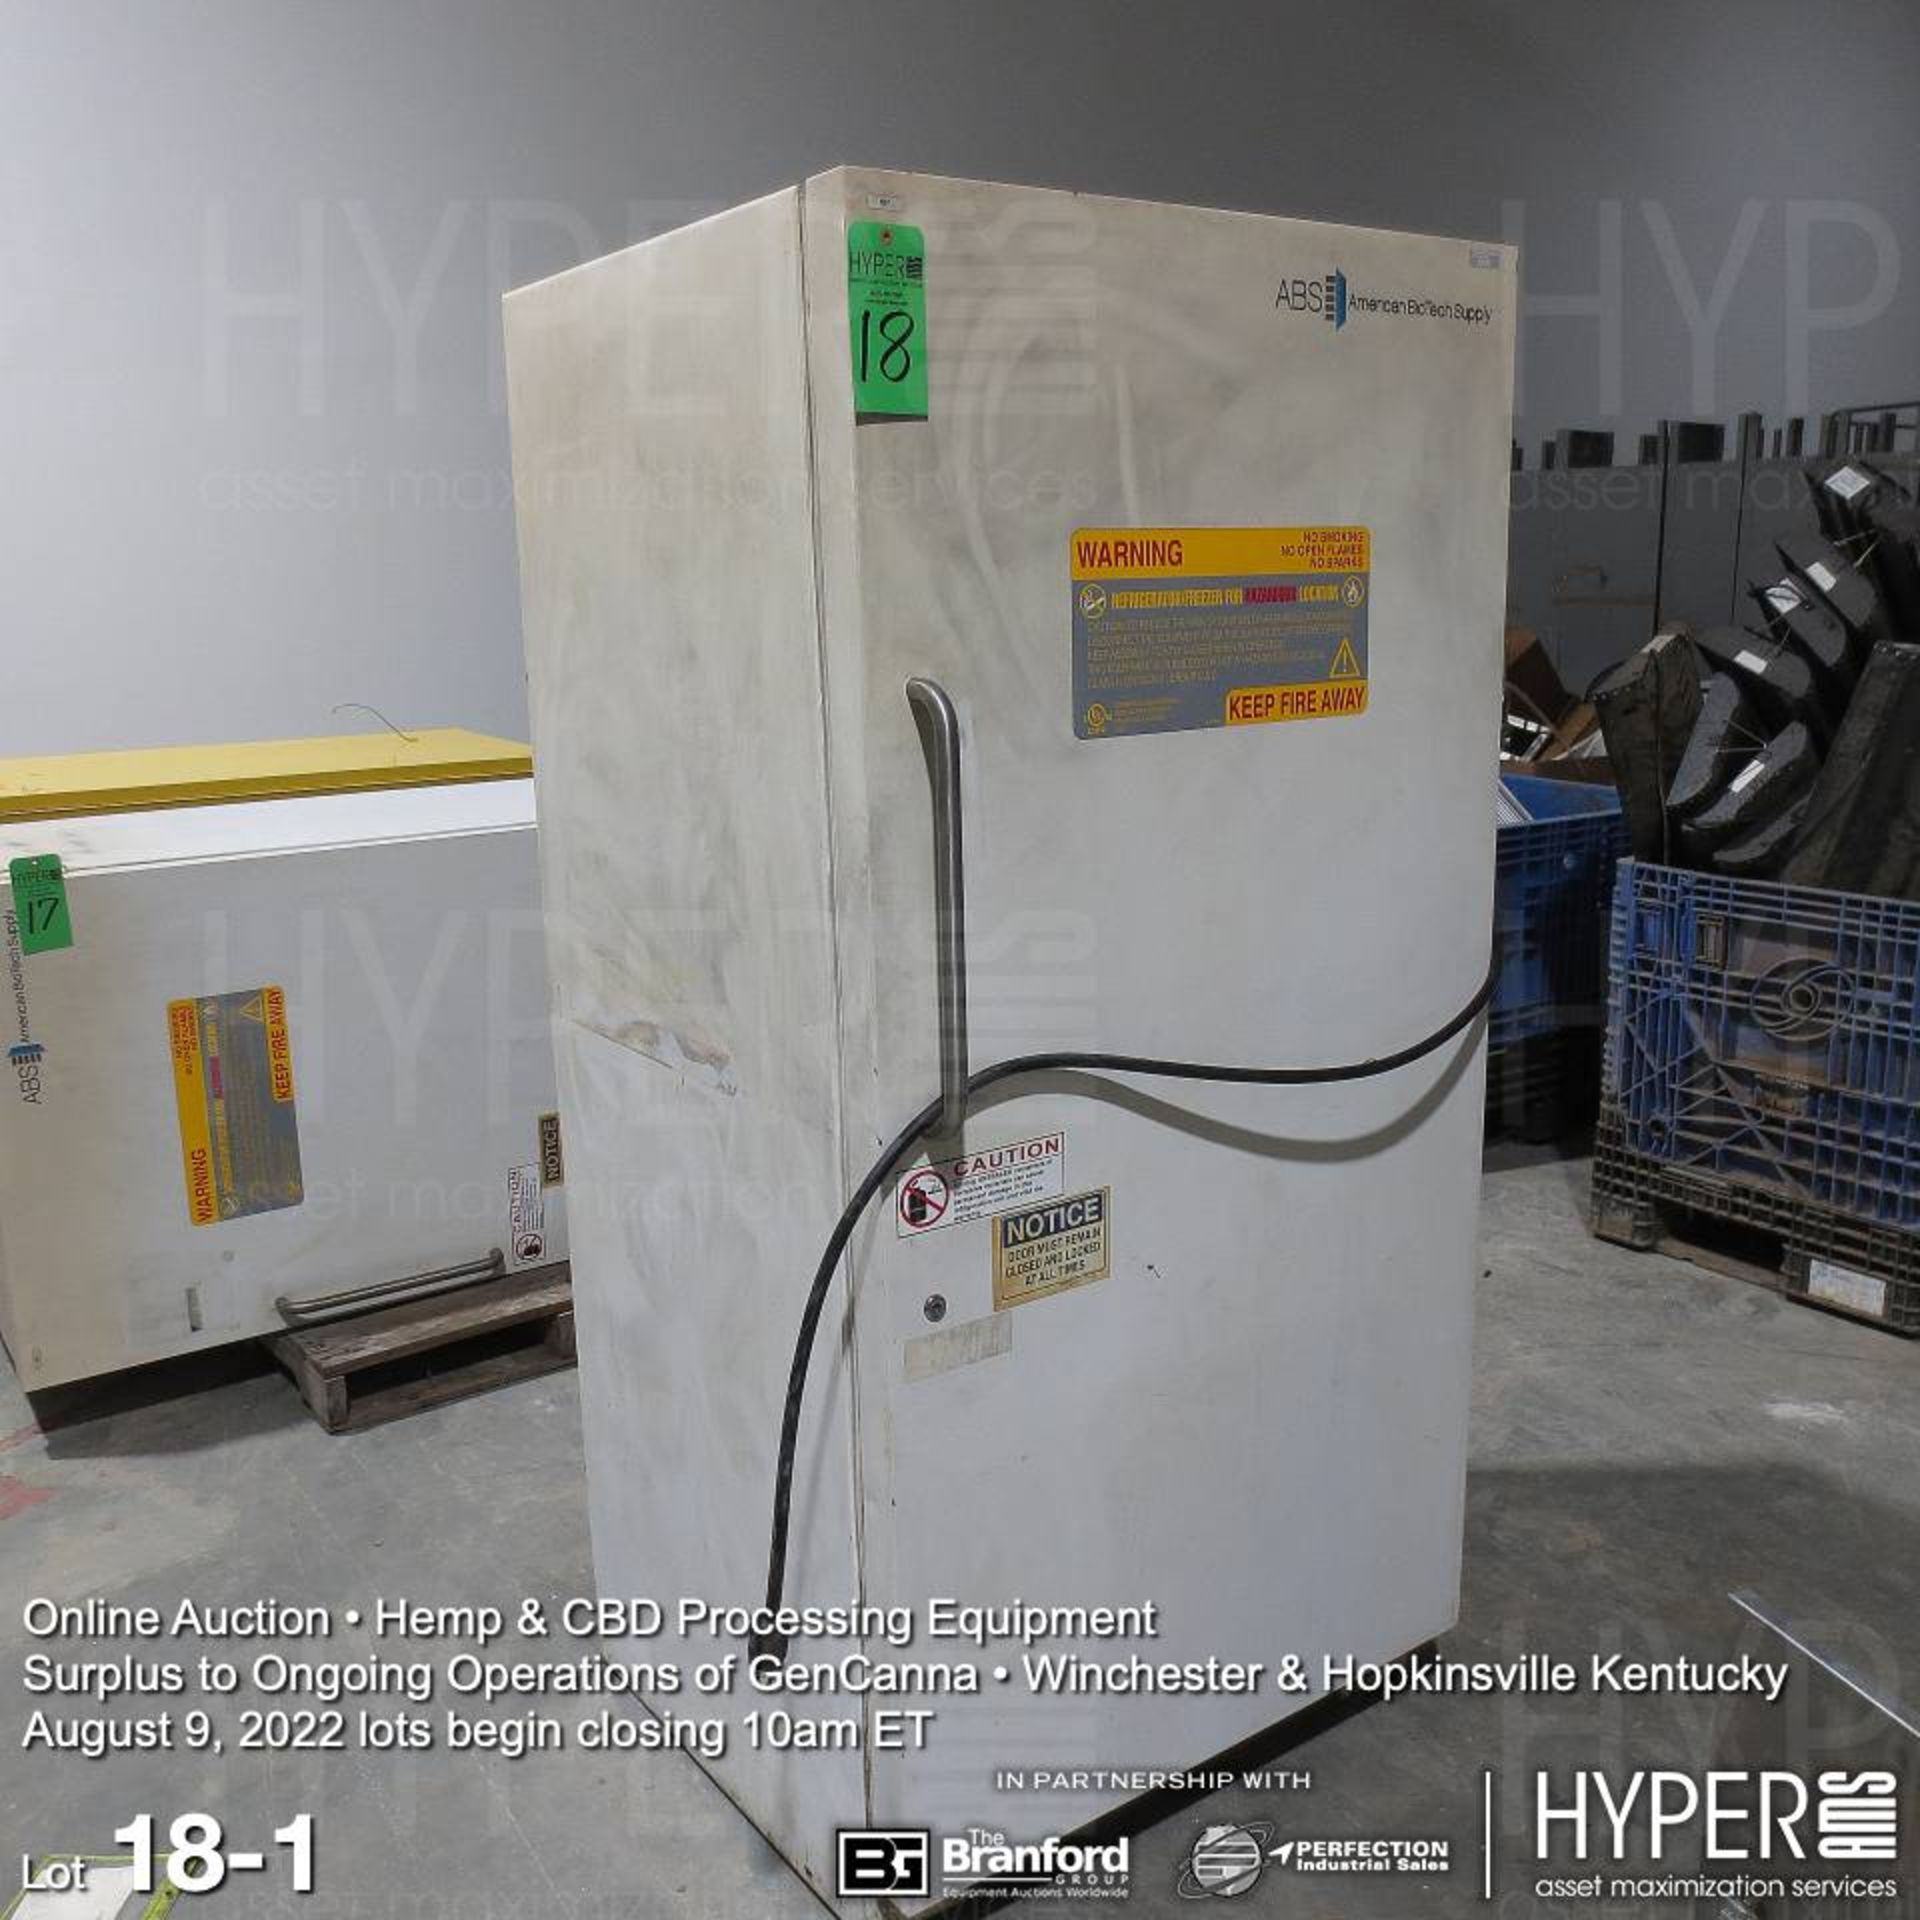 ABS ABT-EFS-30 refrigerator / freezer, 115V, 1PH, 72"H x 35"W x 31"D